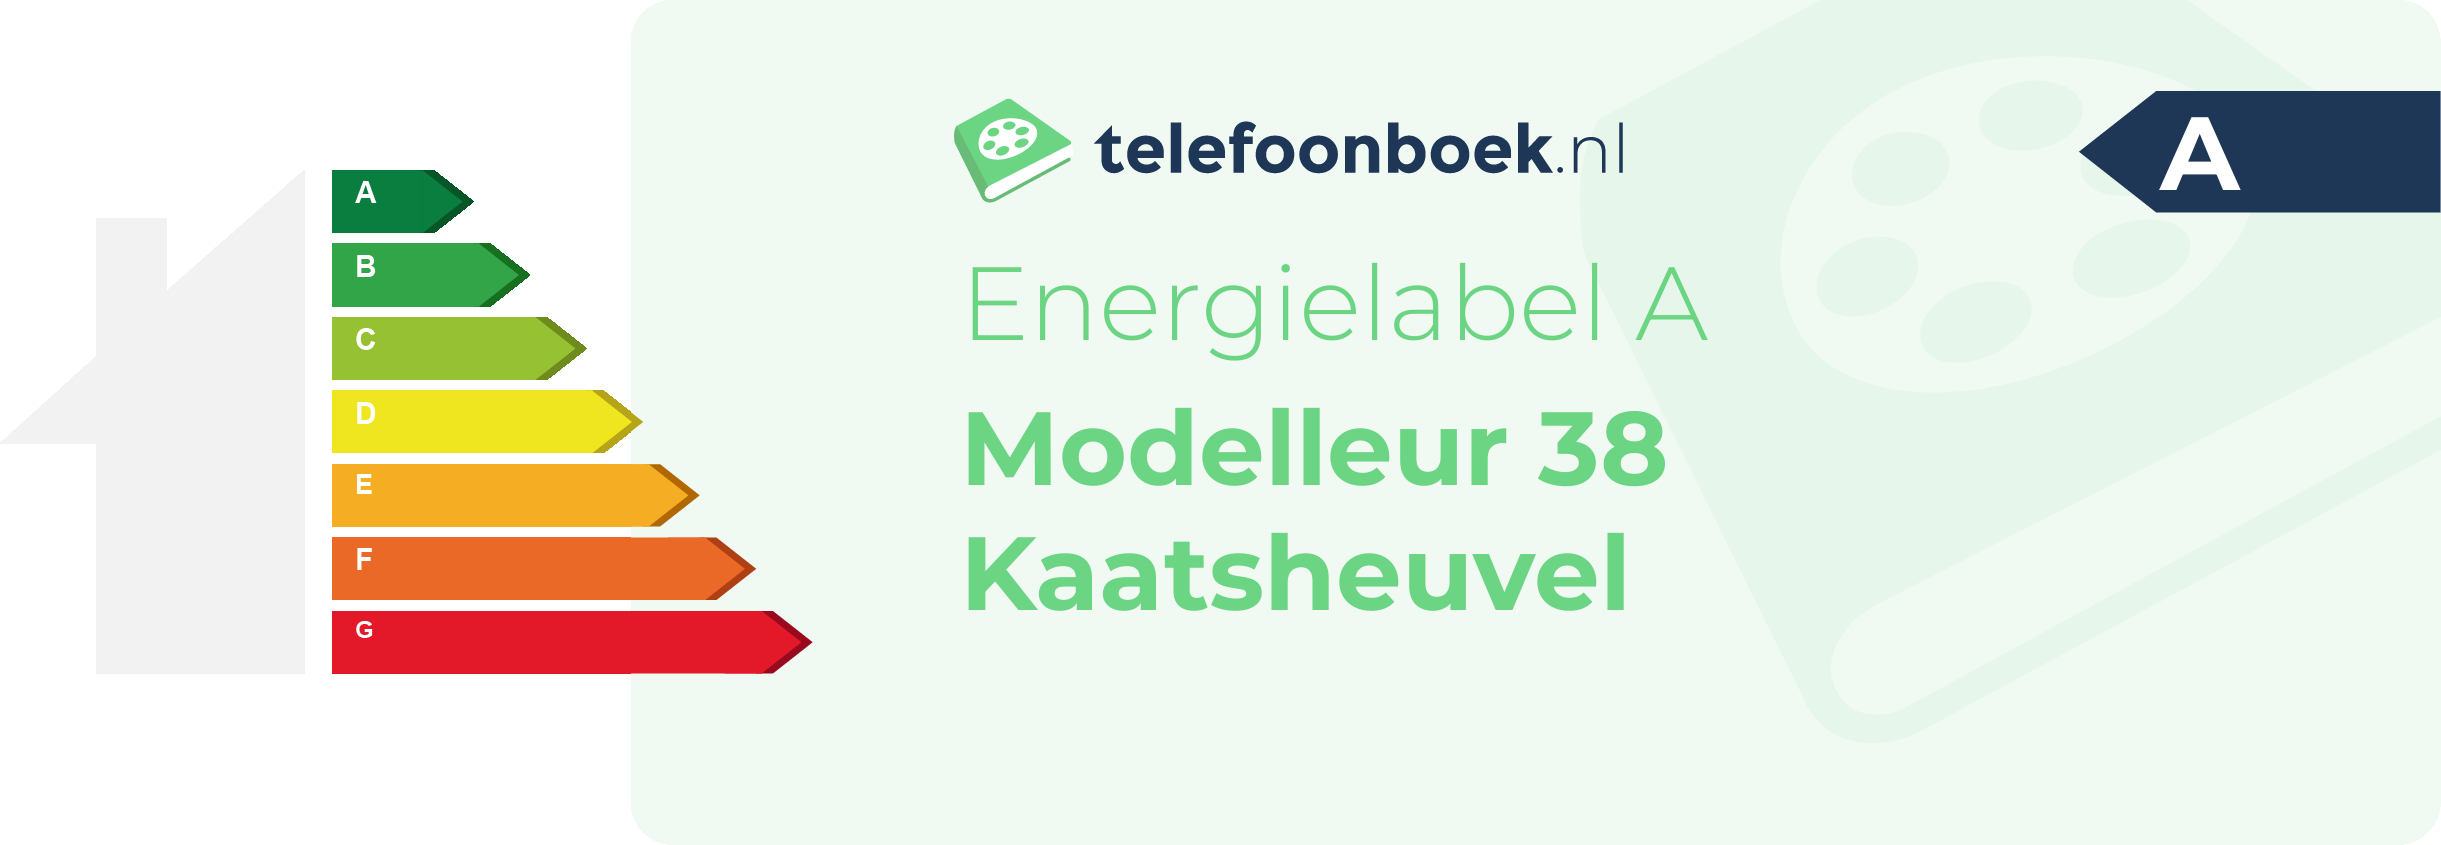 Energielabel Modelleur 38 Kaatsheuvel